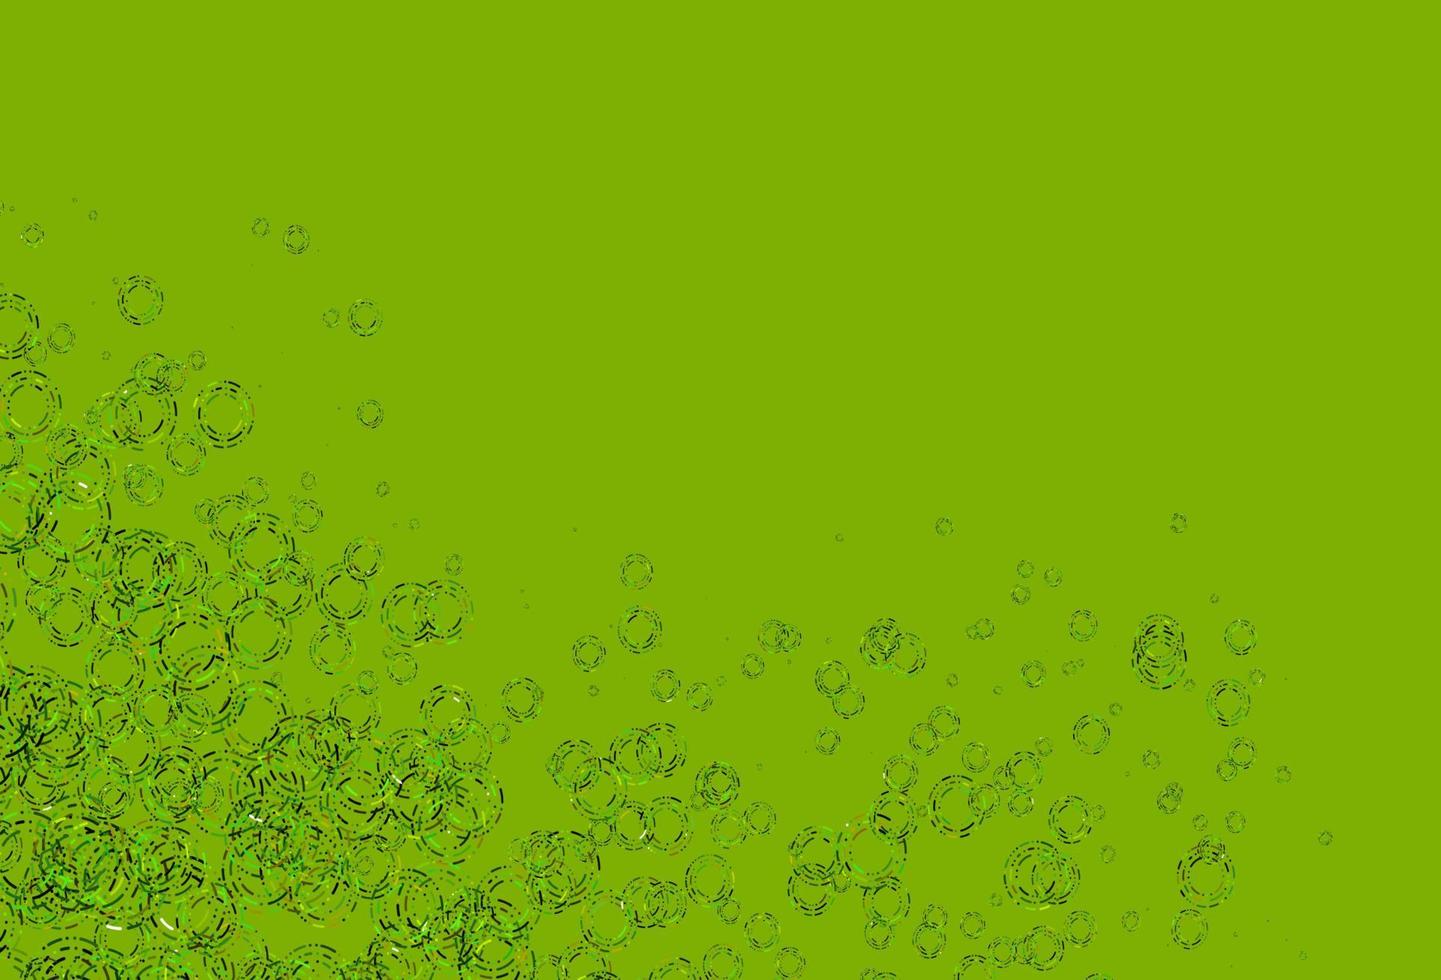 ljusgrön, gul vektorbakgrund med prickar. vektor